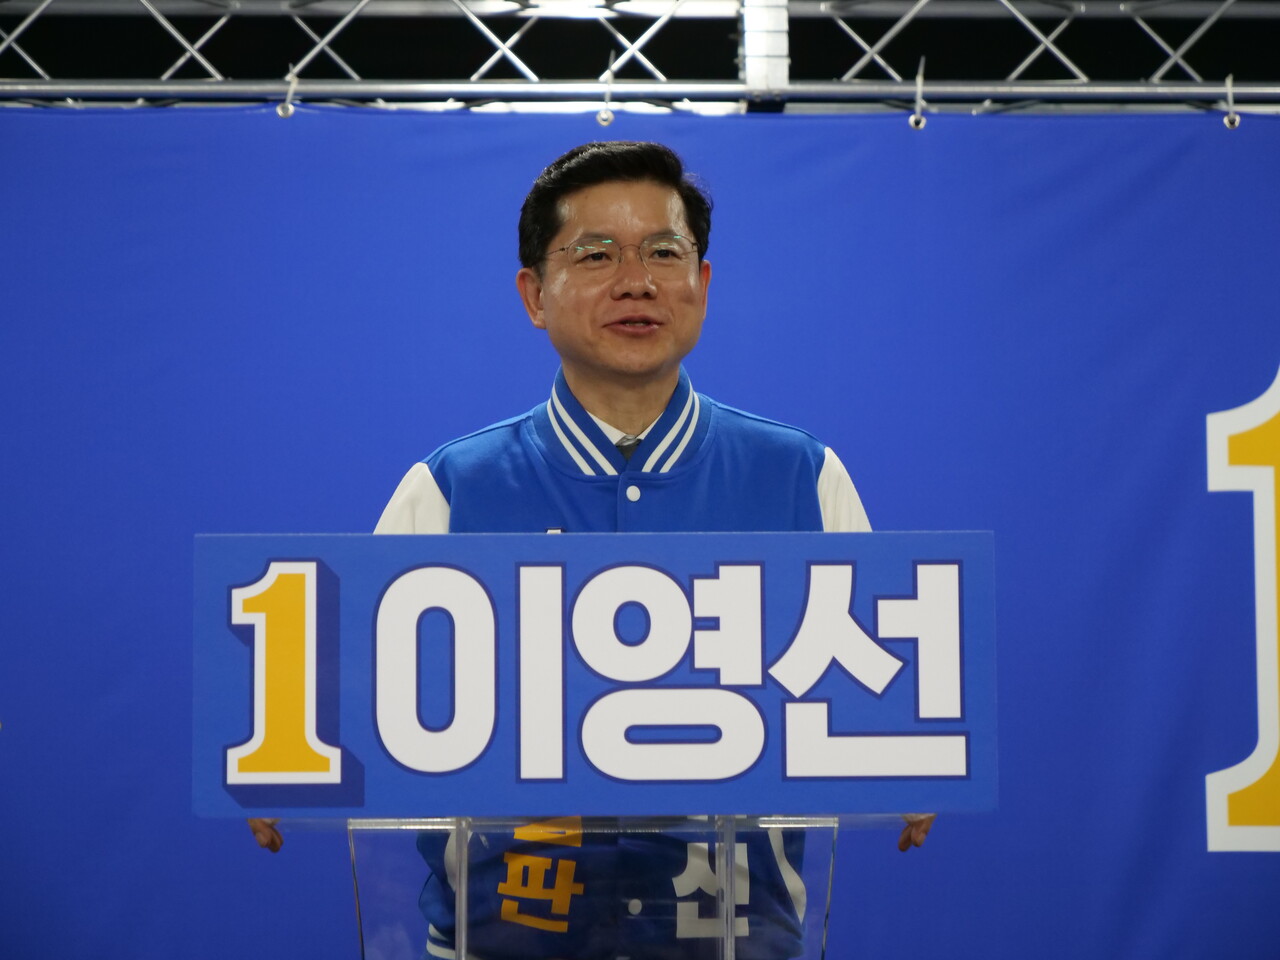 이영선 더불어민주당 세종갑 국회의원 예비후보가 23일 열린 선거사무소 개소식에서 발언하고 있다. 한지혜 기자.